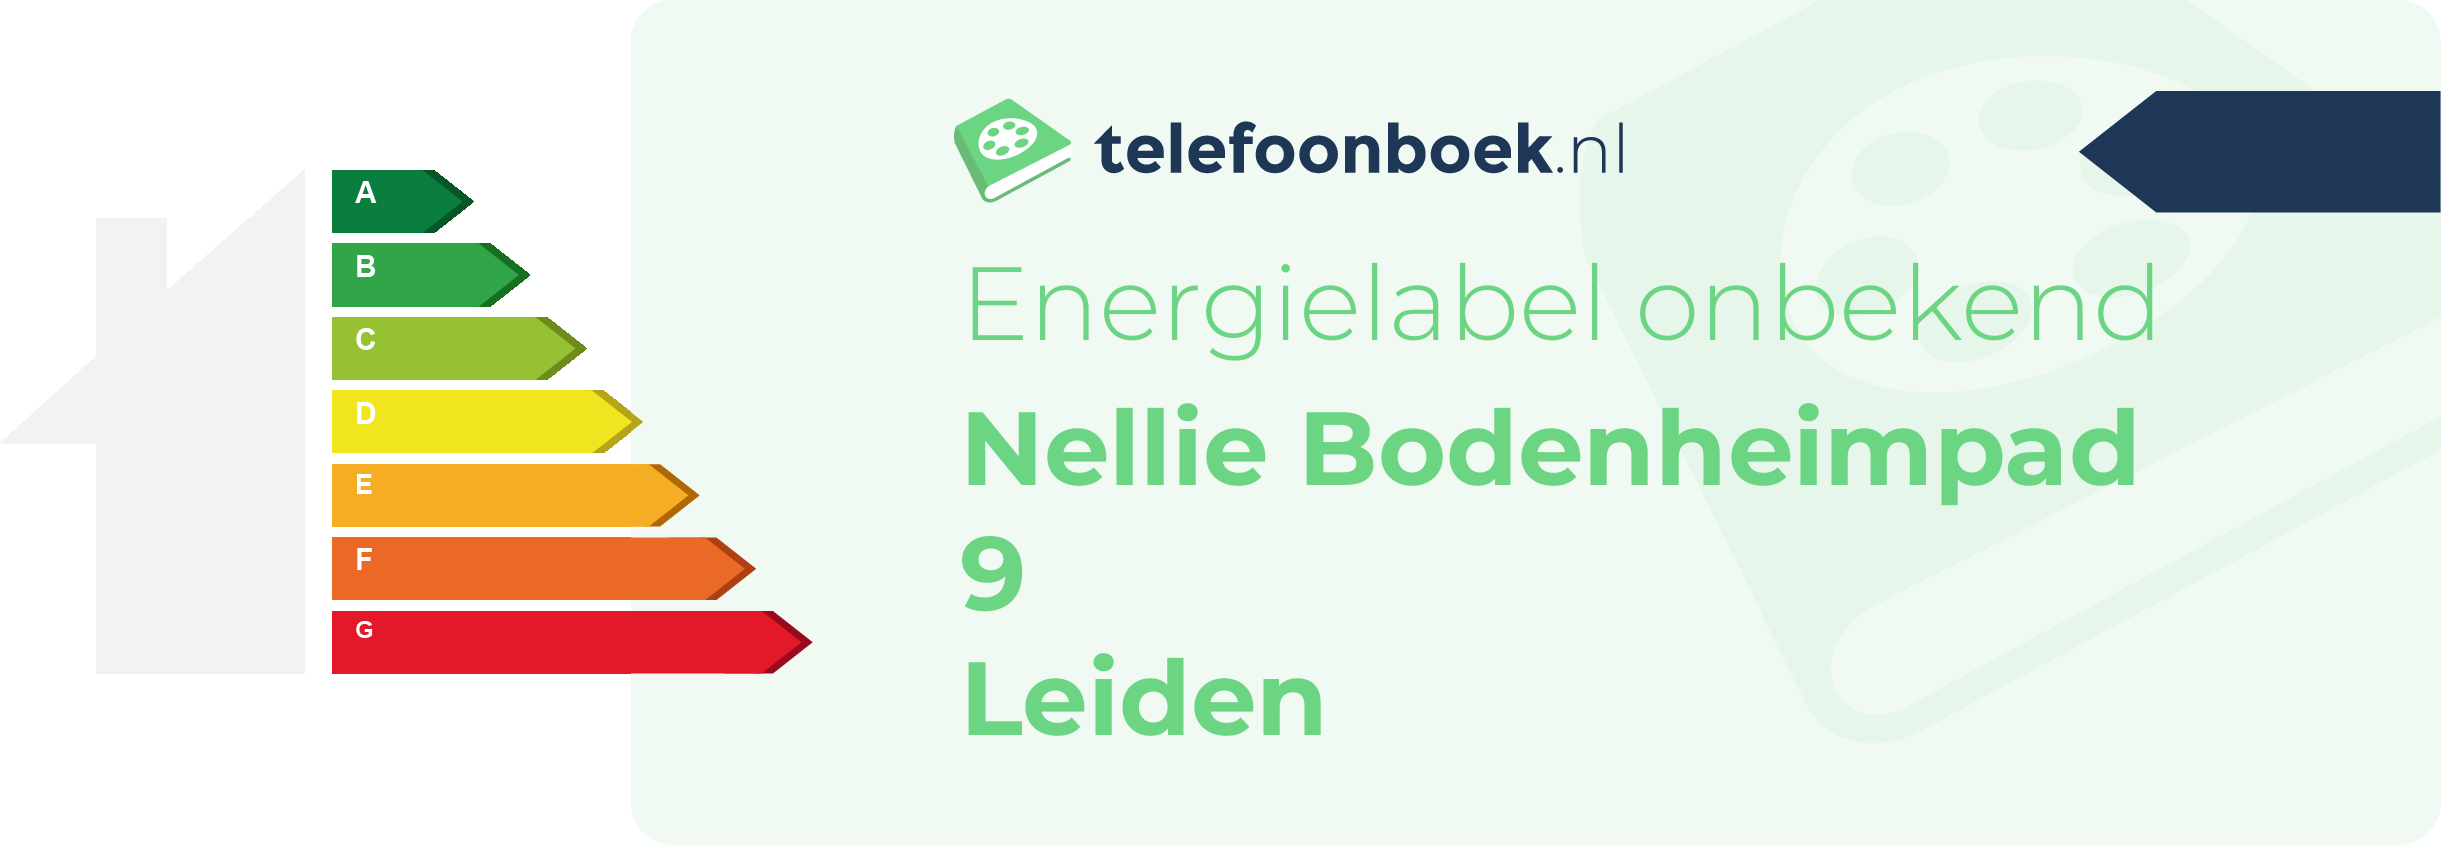 Energielabel Nellie Bodenheimpad 9 Leiden